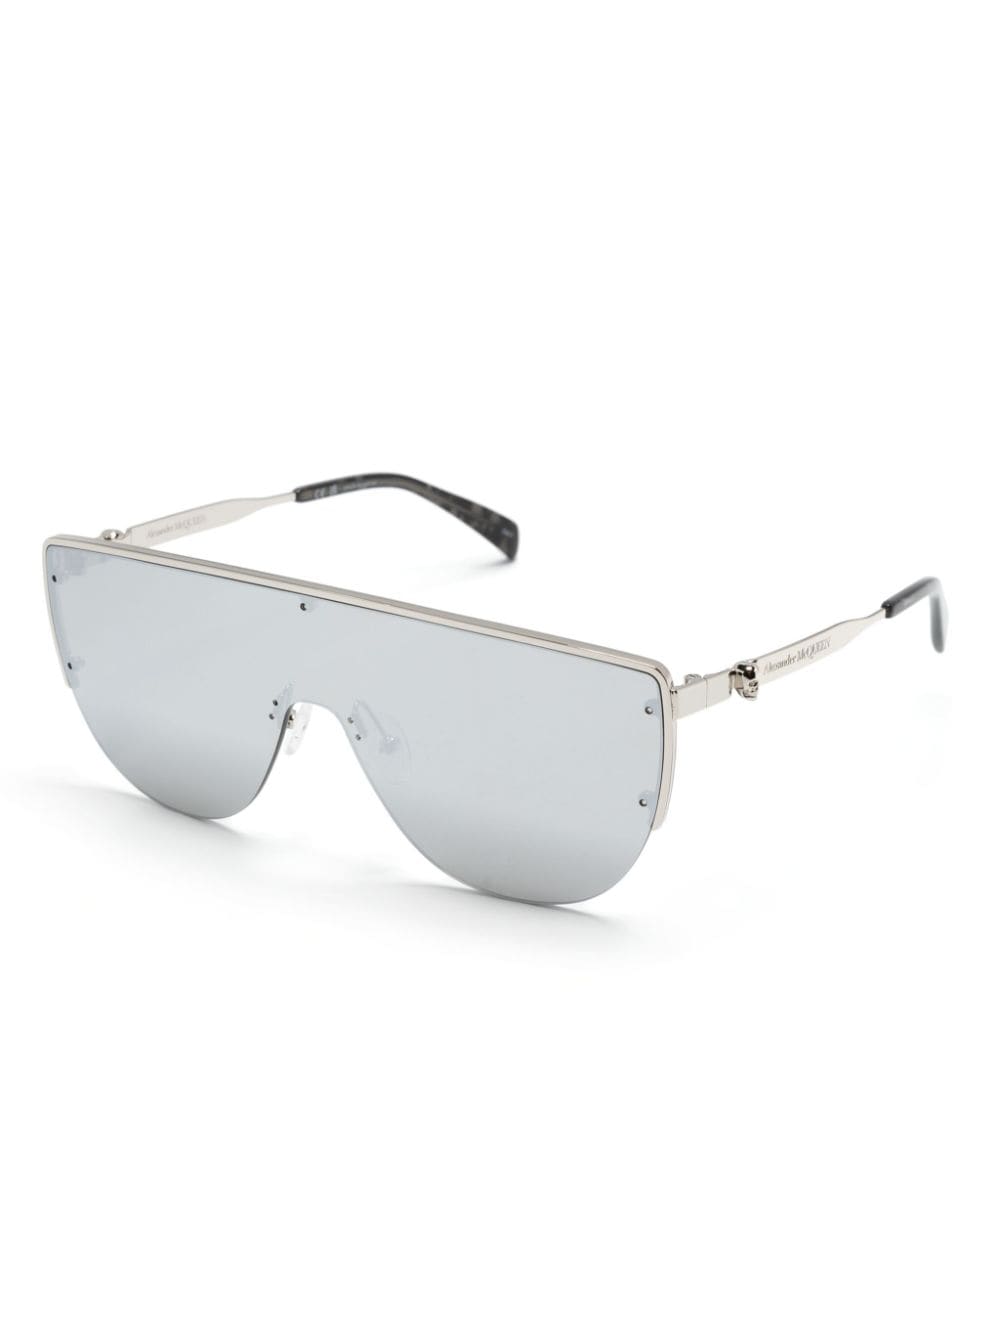 Shield-frame sunglasses<BR/><BR/><BR/><BR/><BR/>